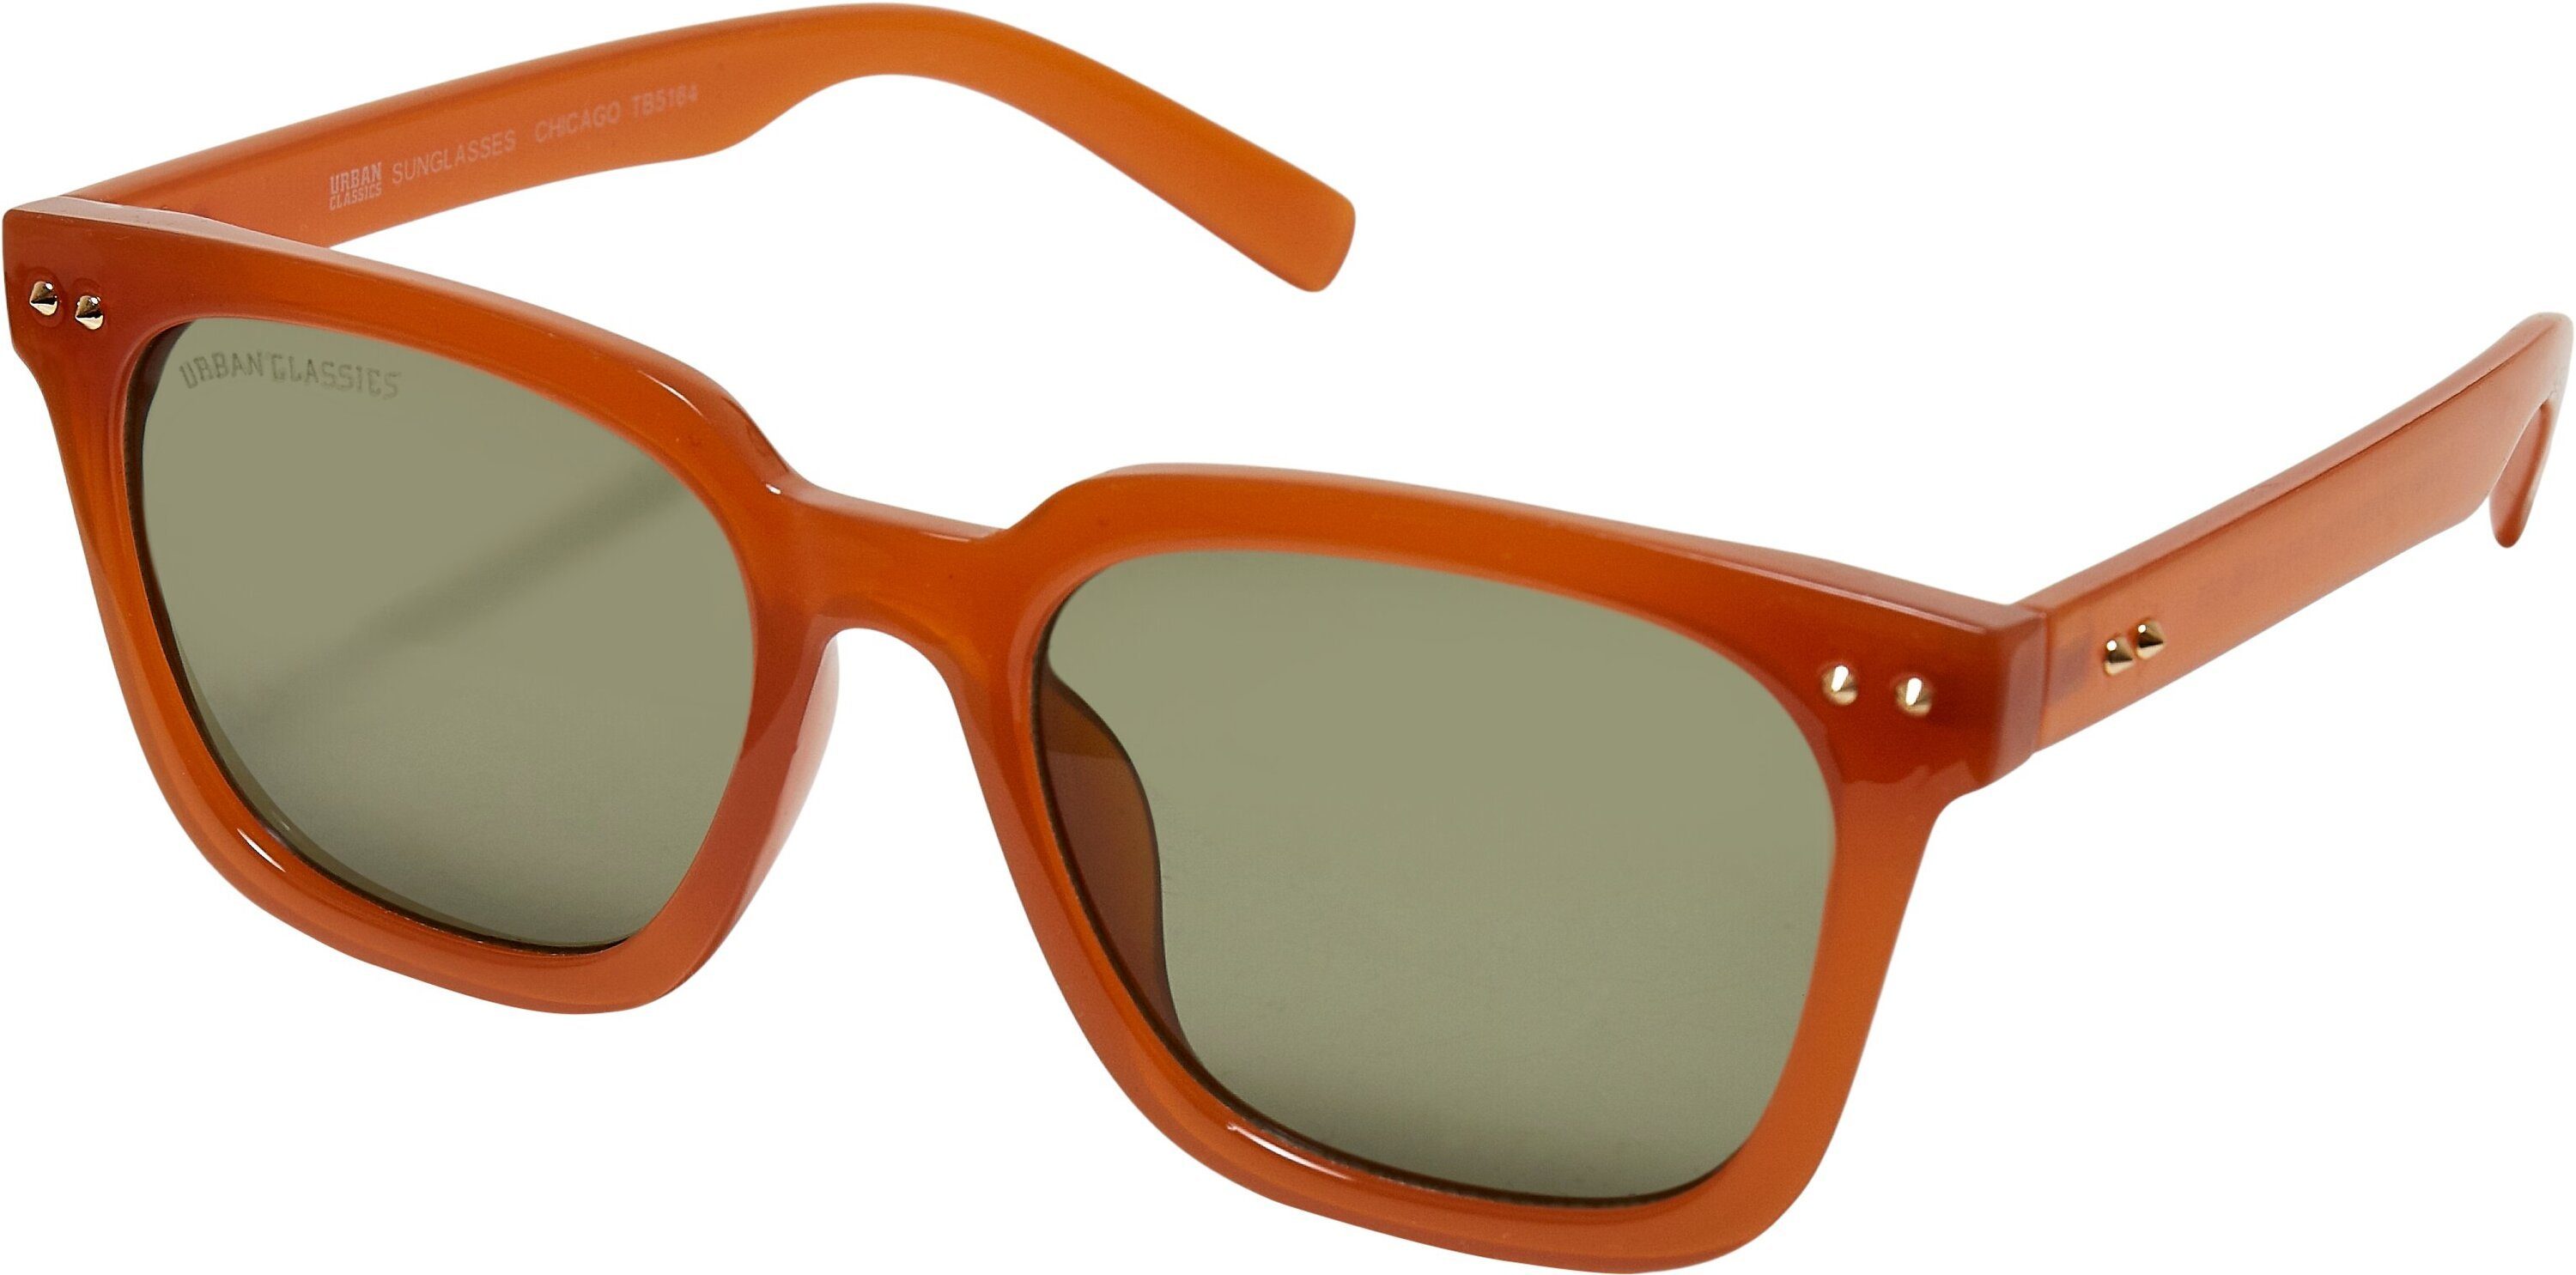 Chicago URBAN Sunglasses 3-Pack Sonnenbrille CLASSICS Unisex